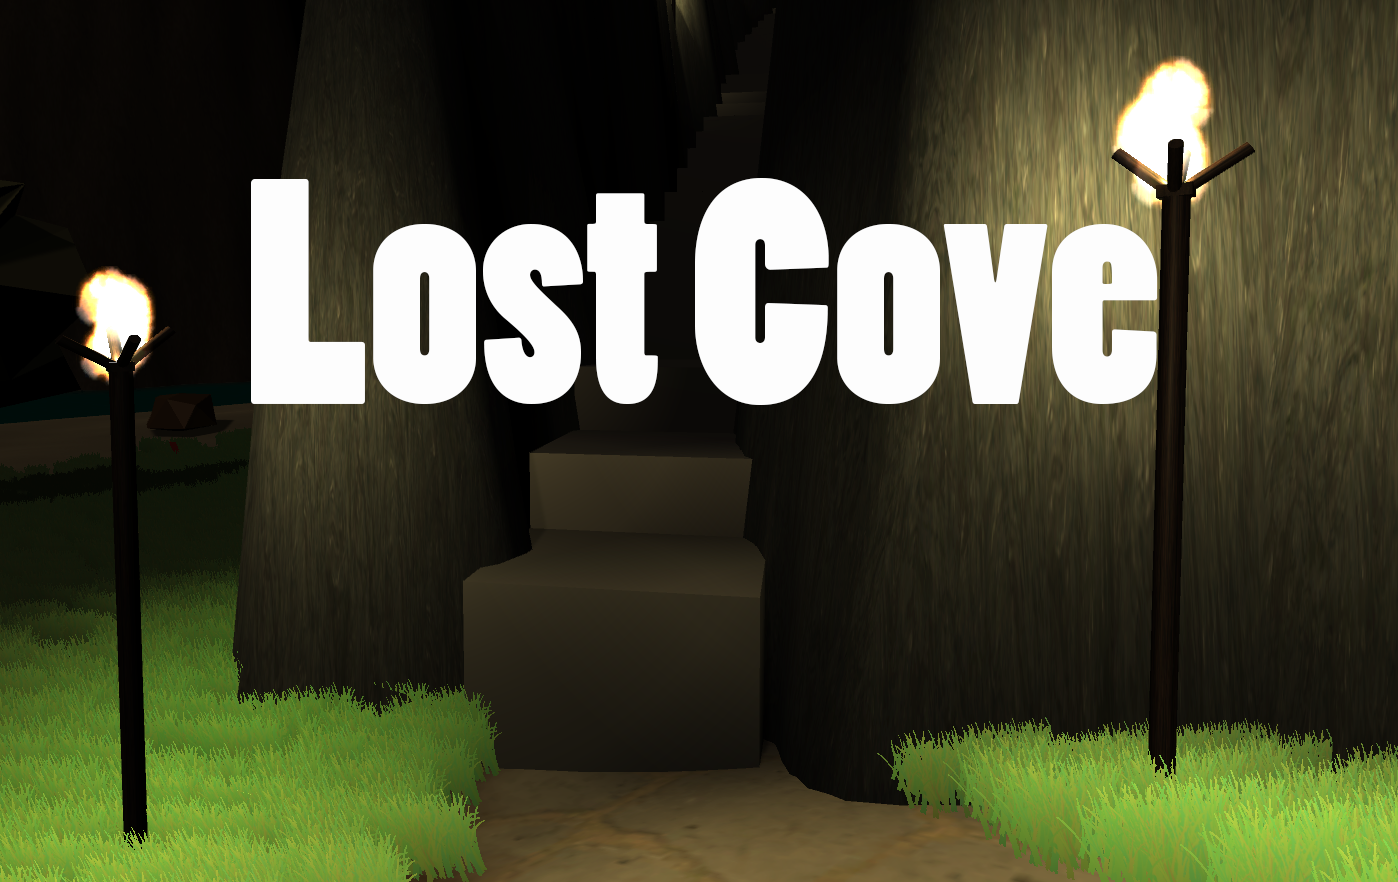 Lost cove